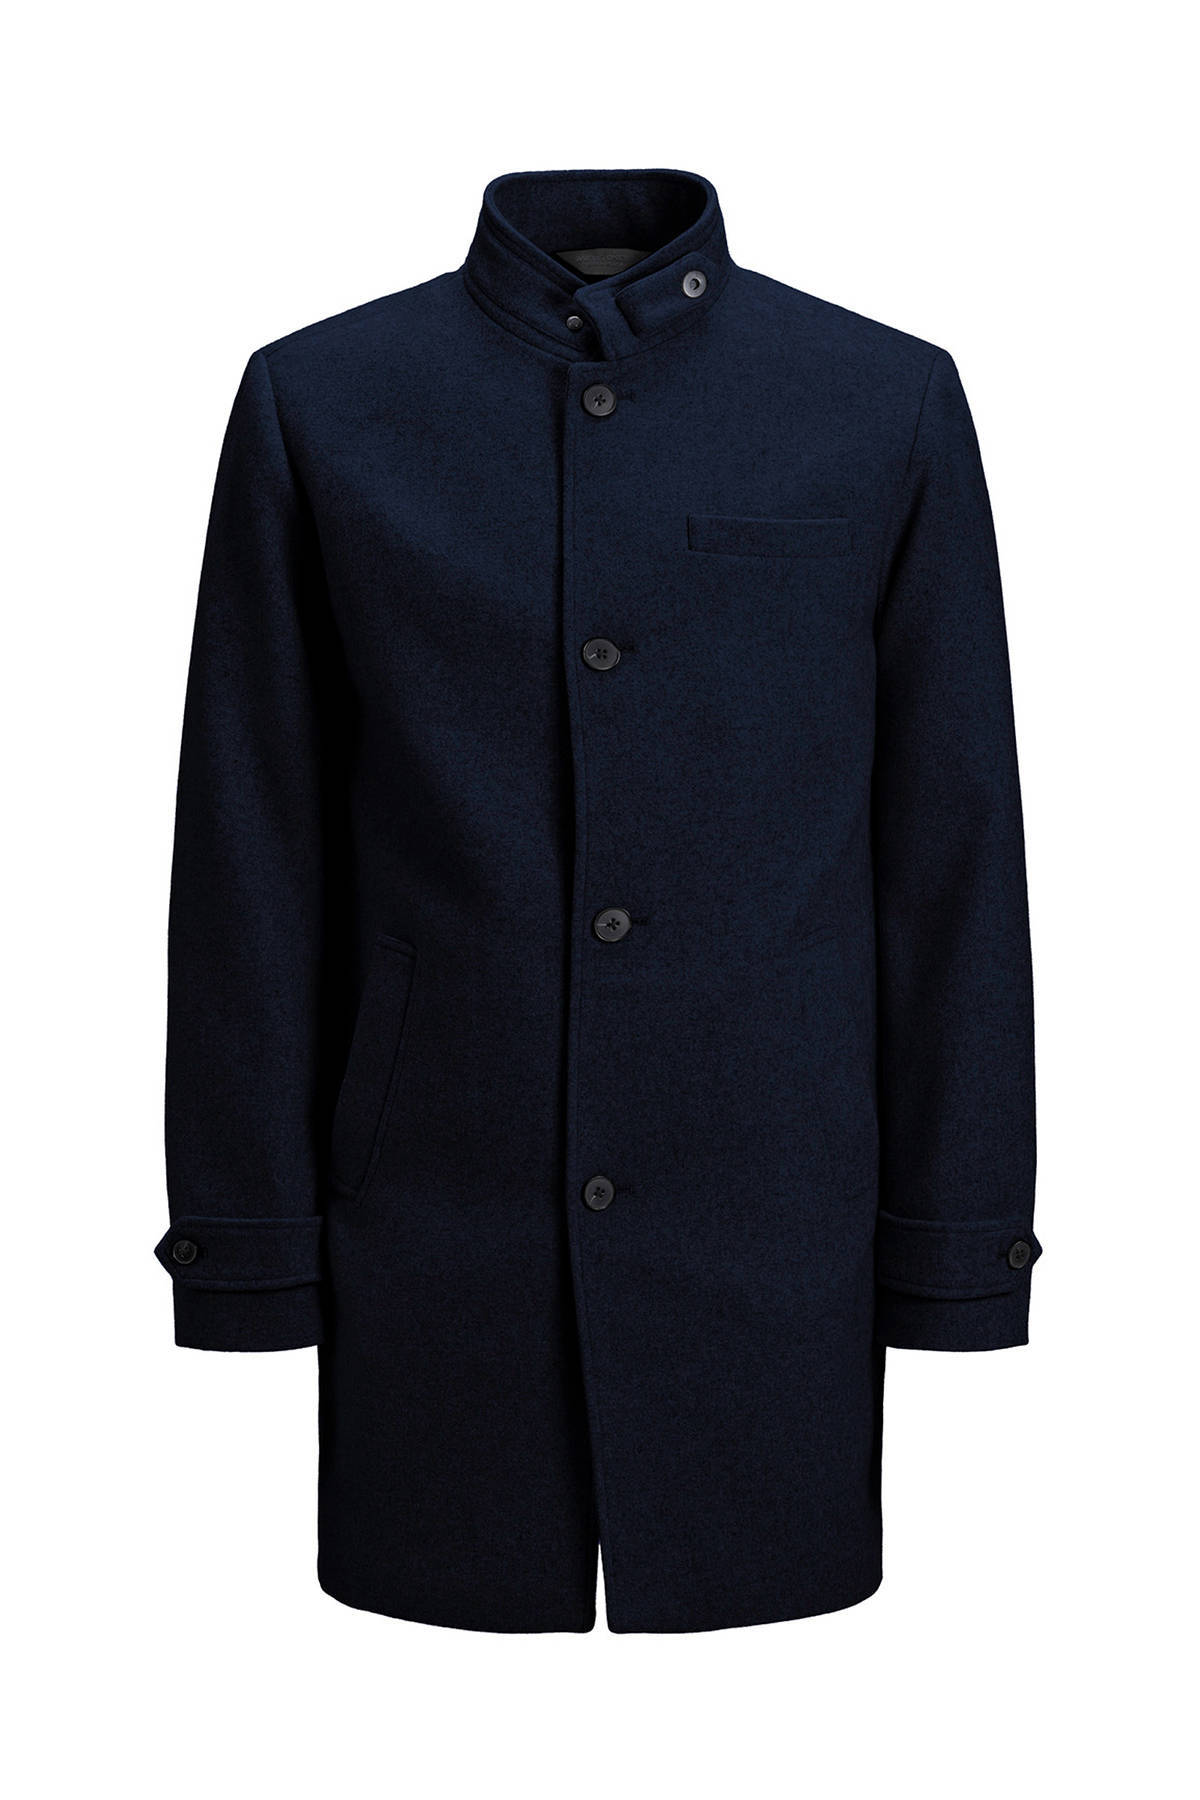 JACK & JONES PREMIUM winterjas met wol donkerblauw online kopen